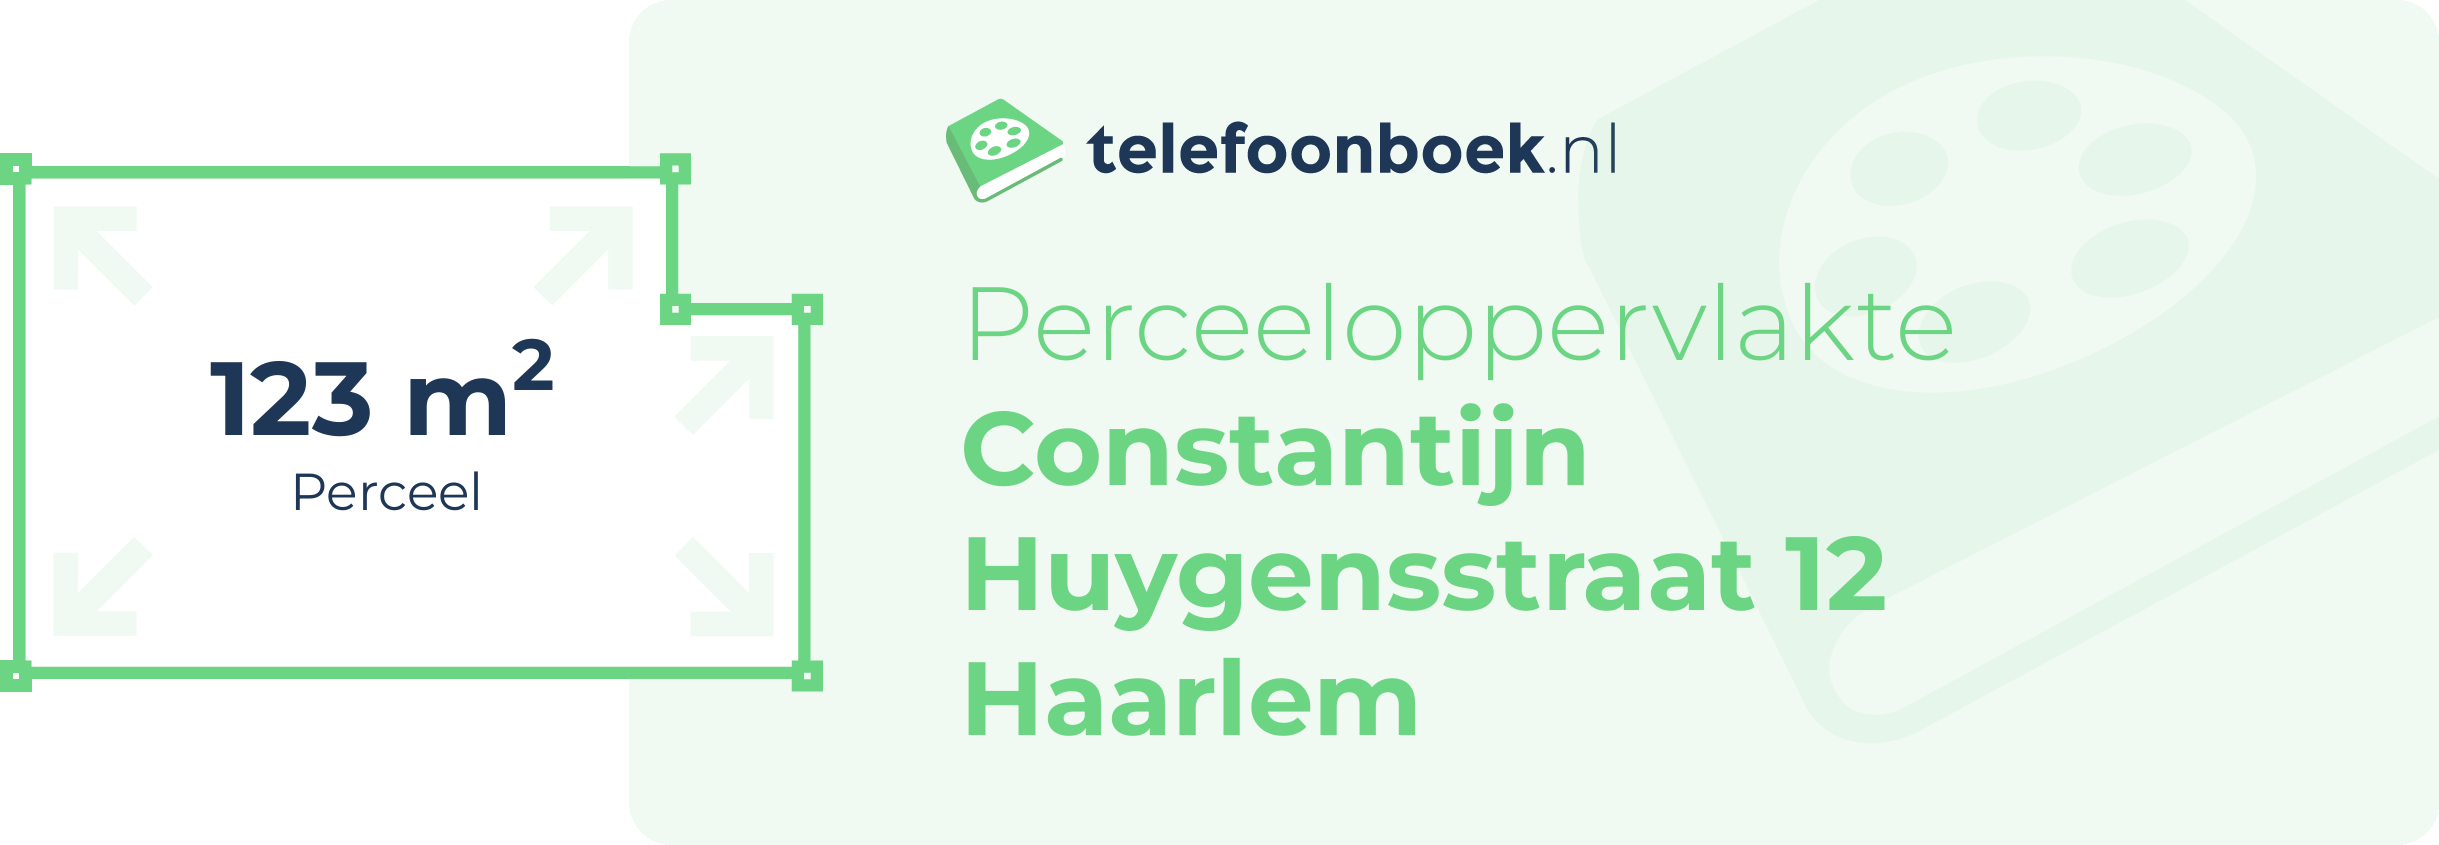 Perceeloppervlakte Constantijn Huygensstraat 12 Haarlem